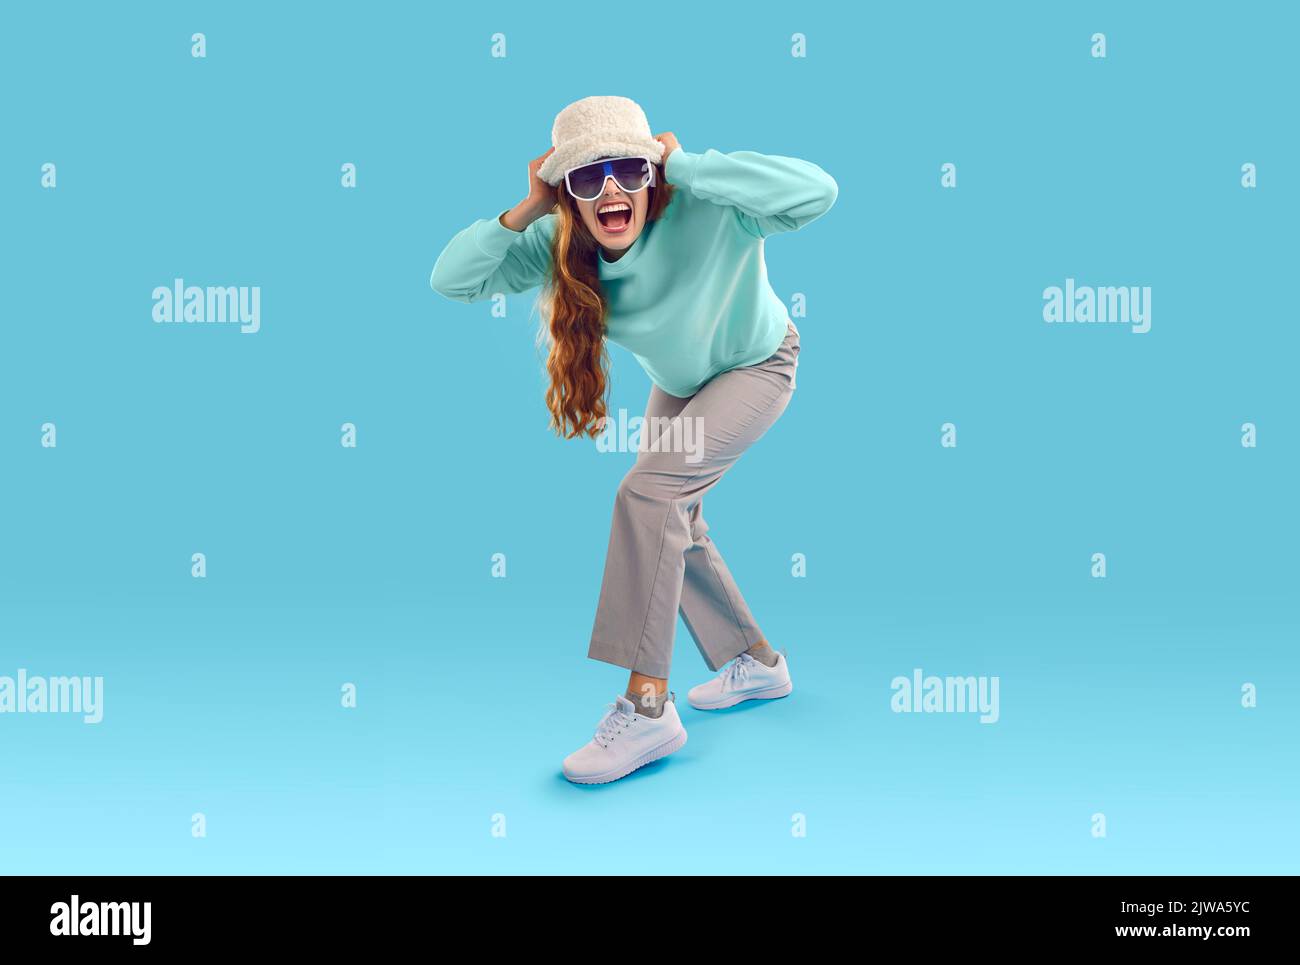 Lustige, aufgeregte Frau mit Hut und Sonnenbrille, die auf blauem Studiohintergrund steht und schreit Stockfoto